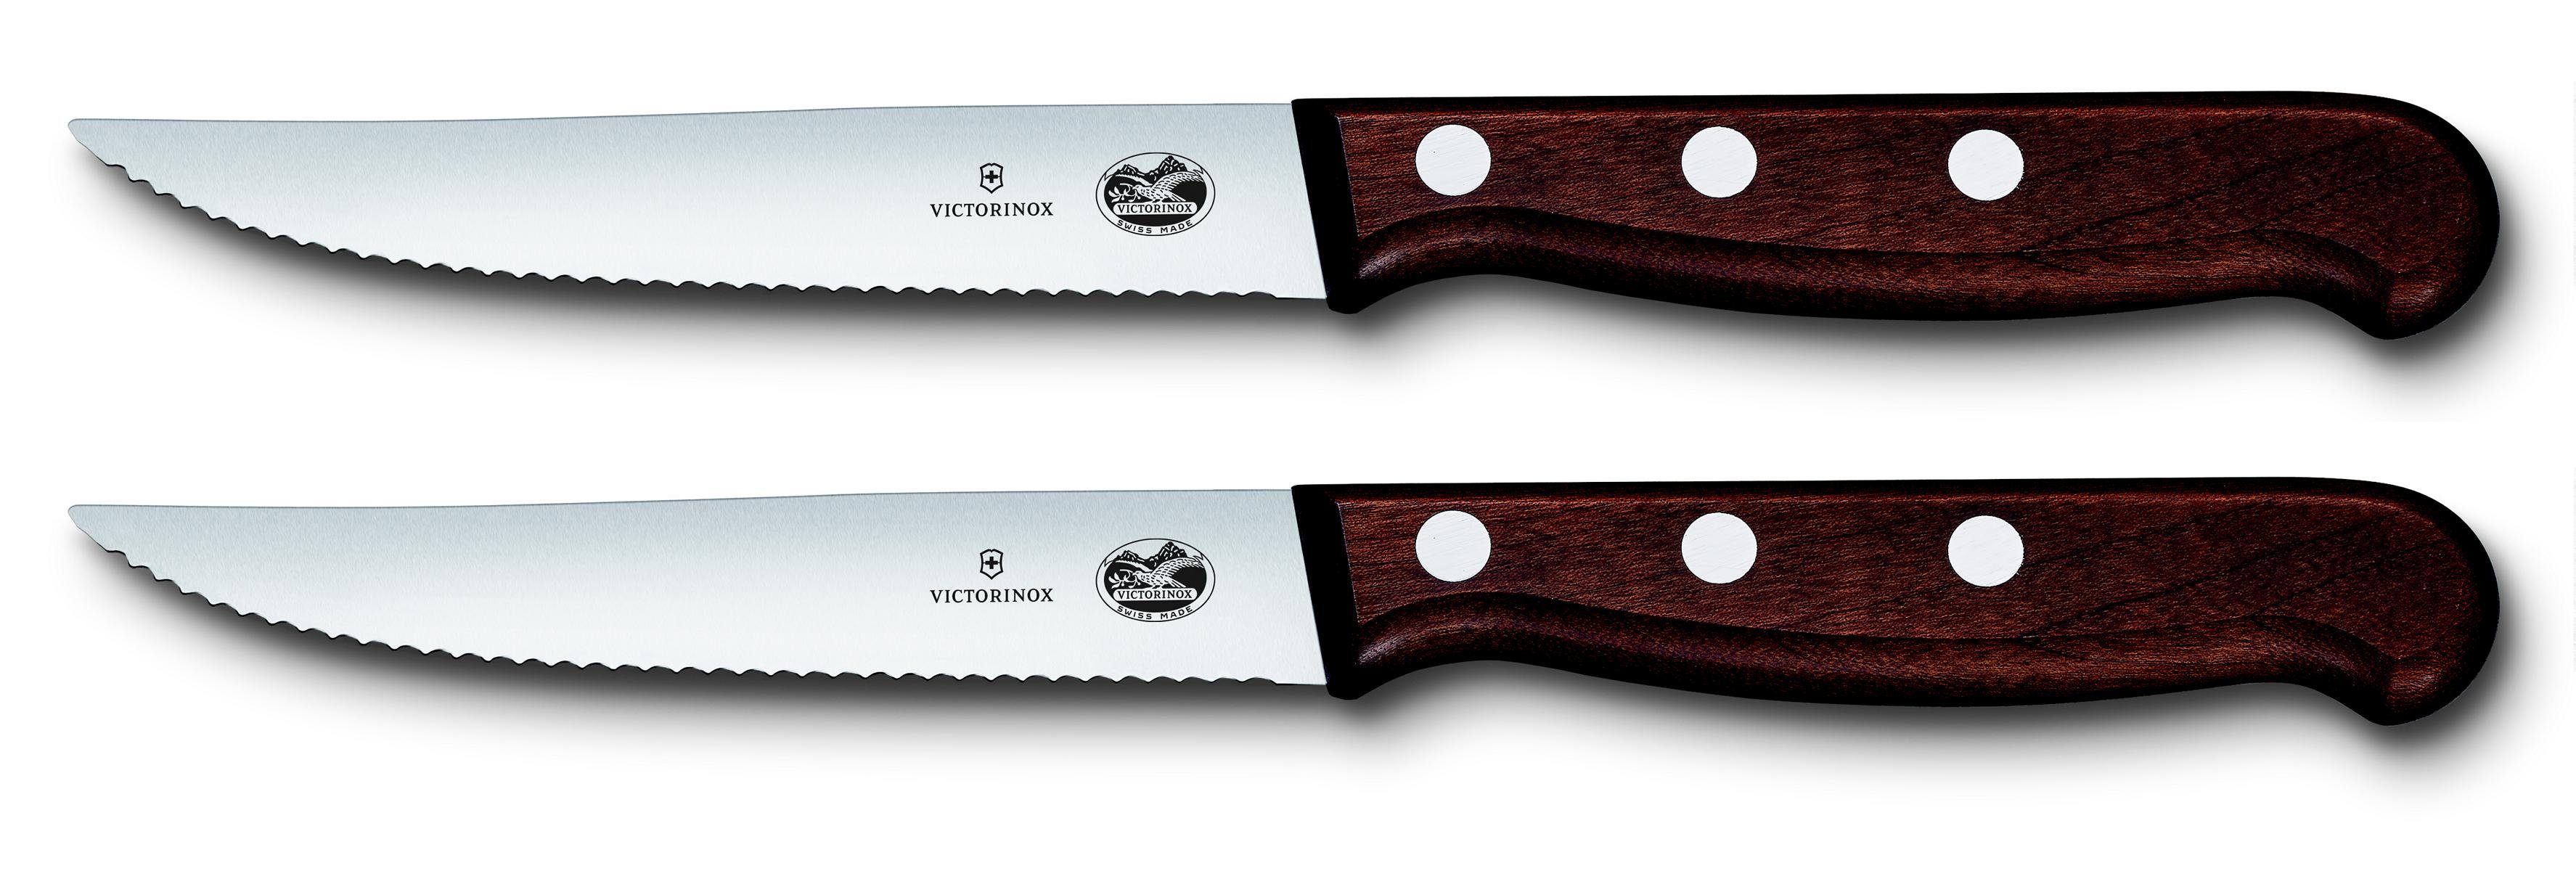 Steakmesser-Set, Taschenmesser 2-teilig mod 12 cm, Ahornholz,Wellenschliff, Victorinox